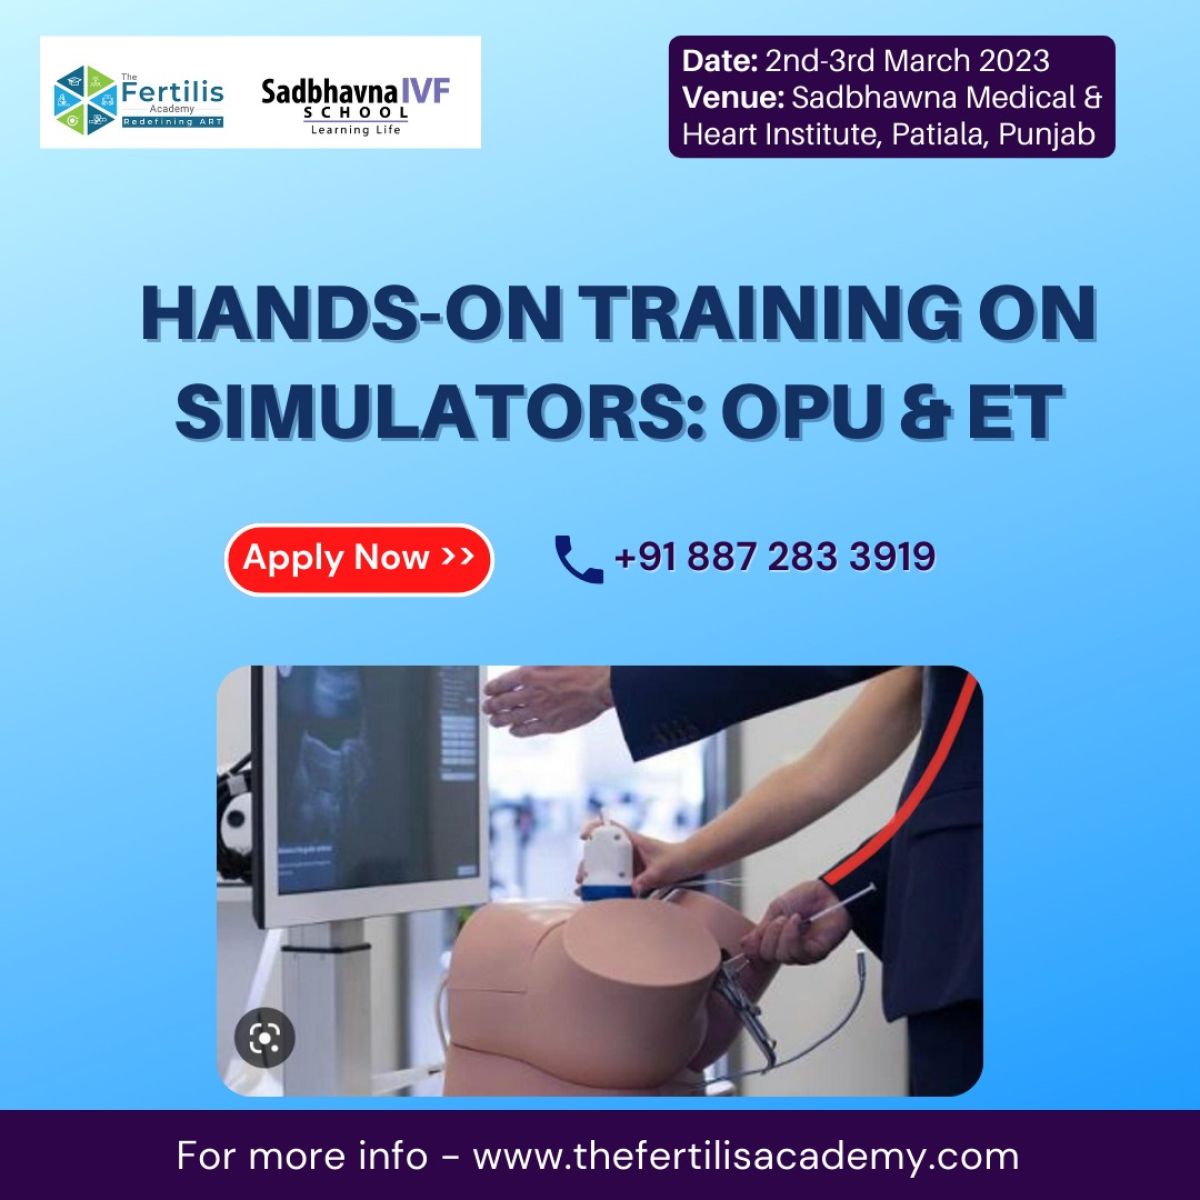 Hands-on Training on Simulators: OPU & ET